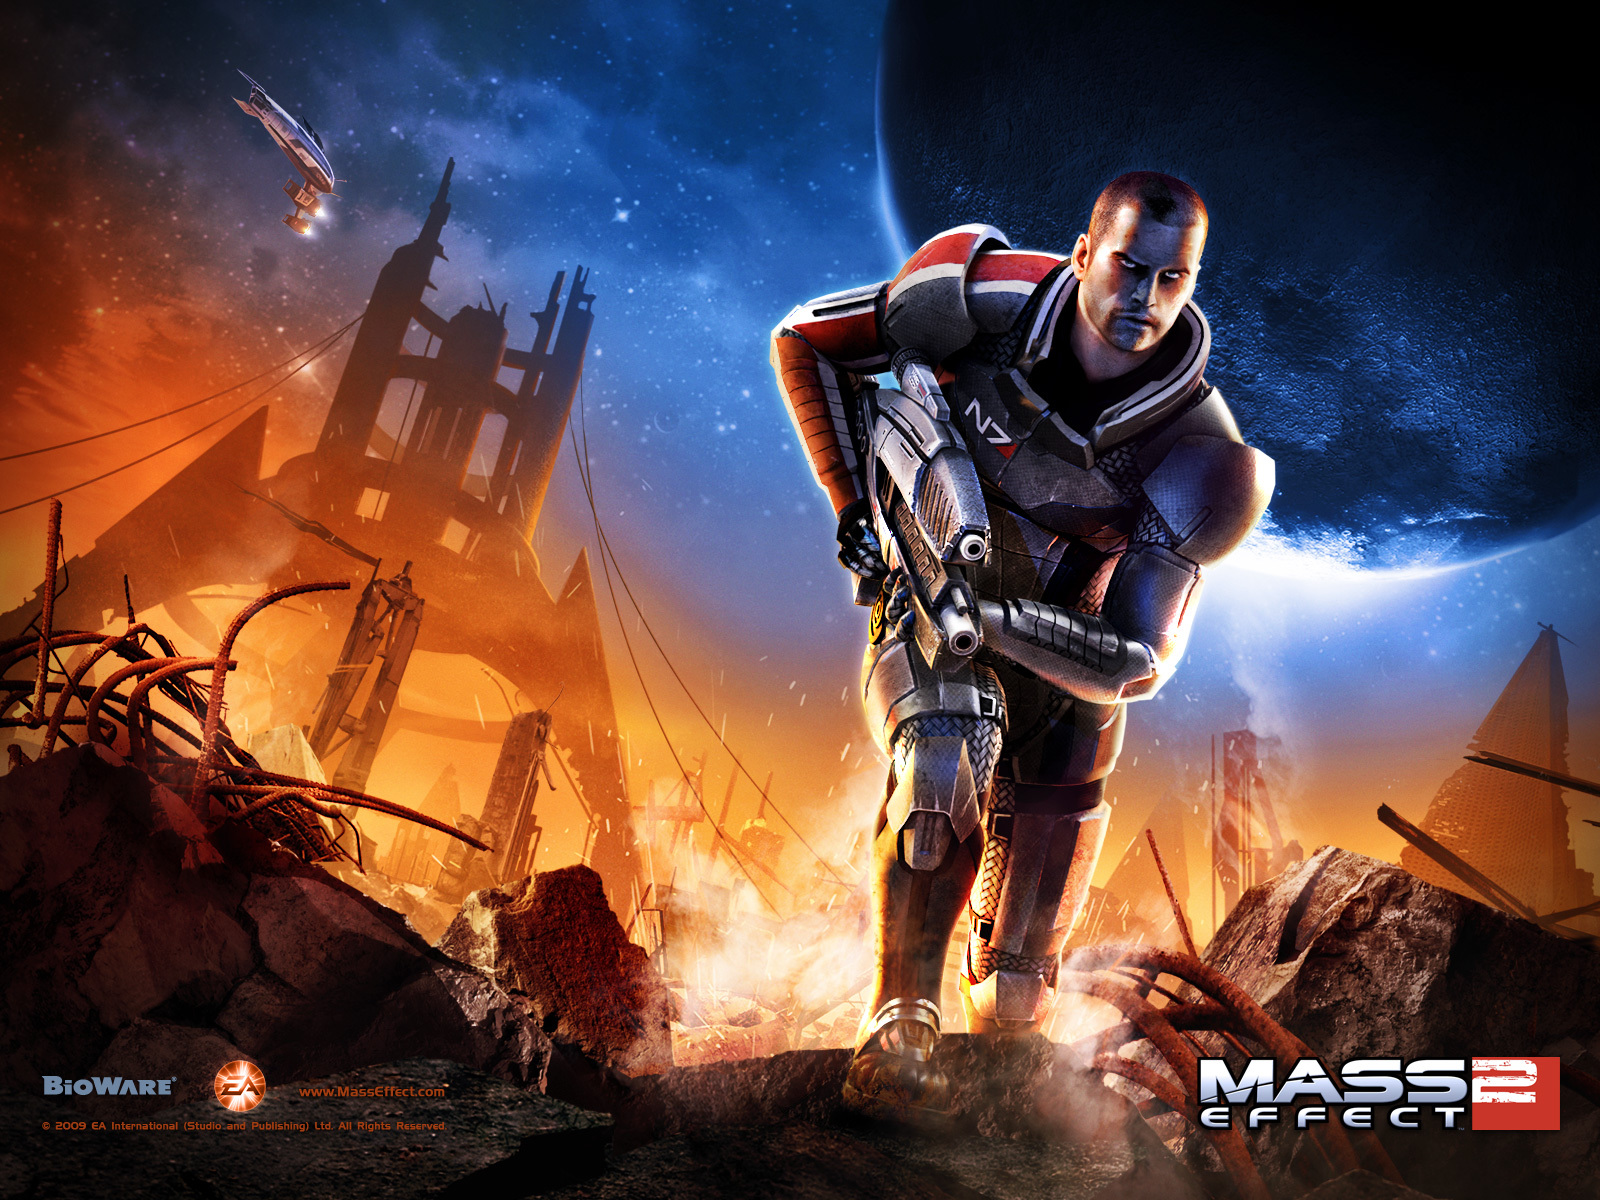 Популярные заставки и фоны Mass Effect на компьютер